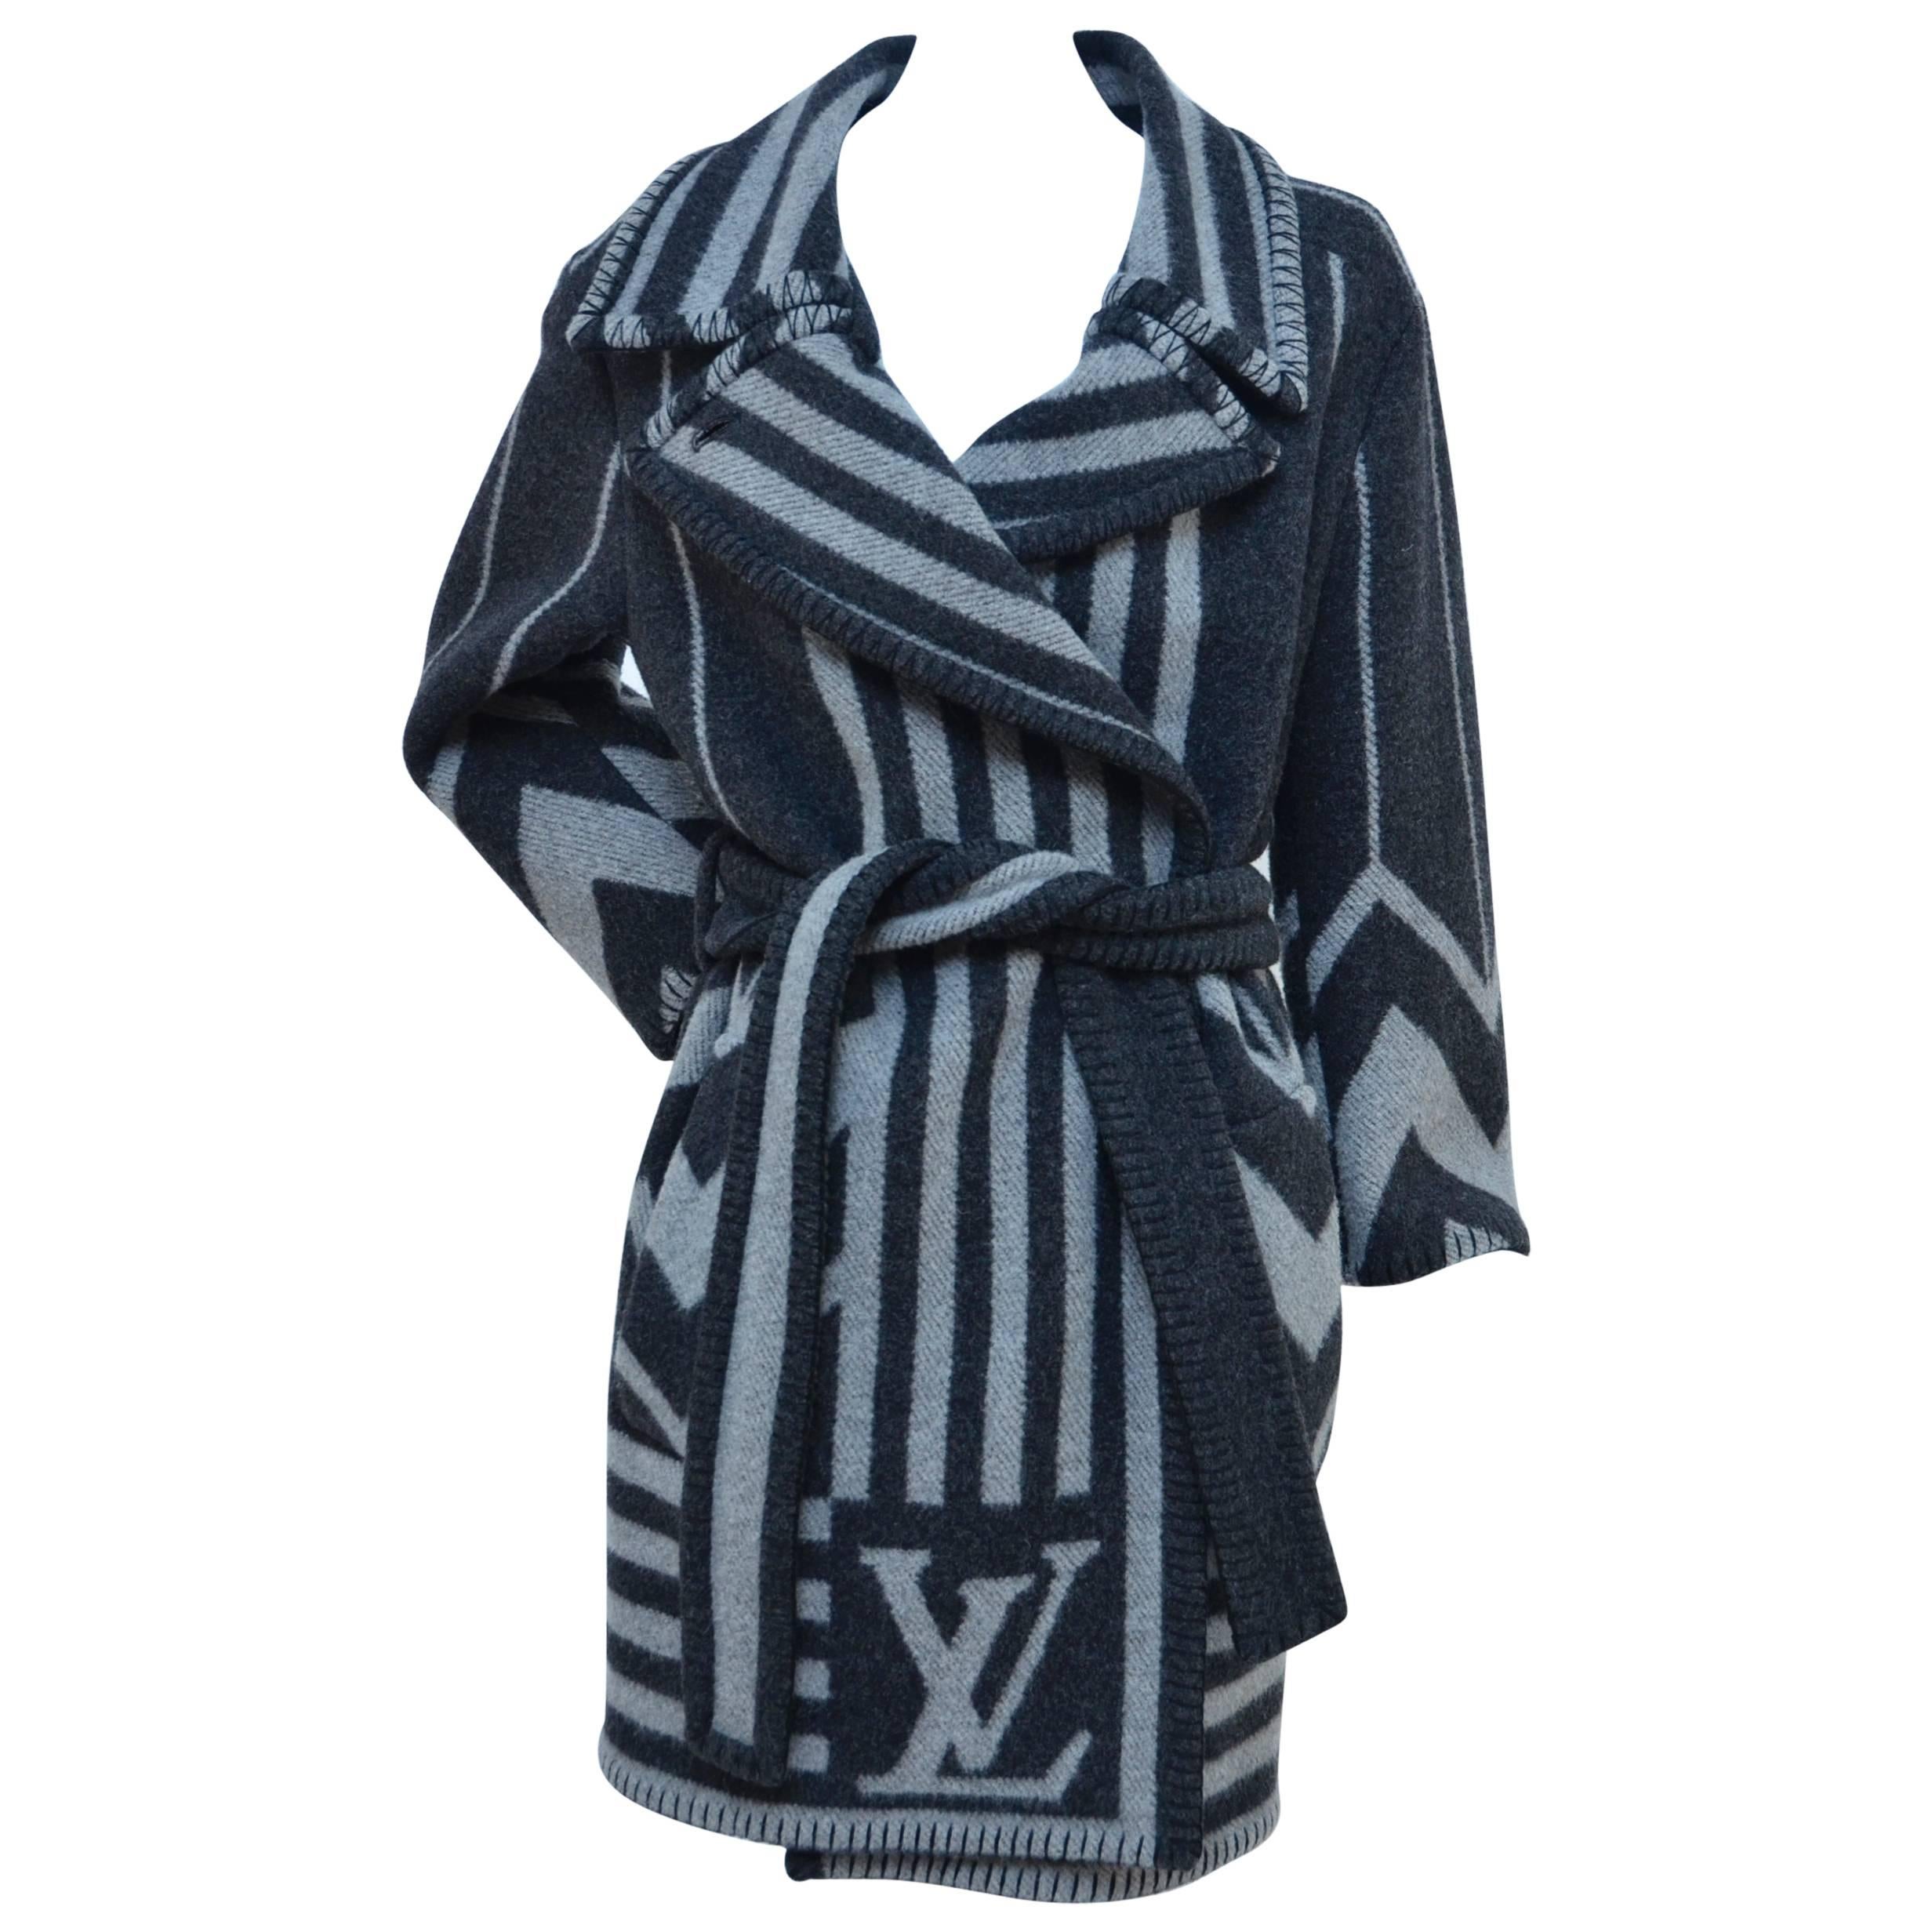 LV  Louis Vuitton "Blanket" Coat  Size 38  Mint